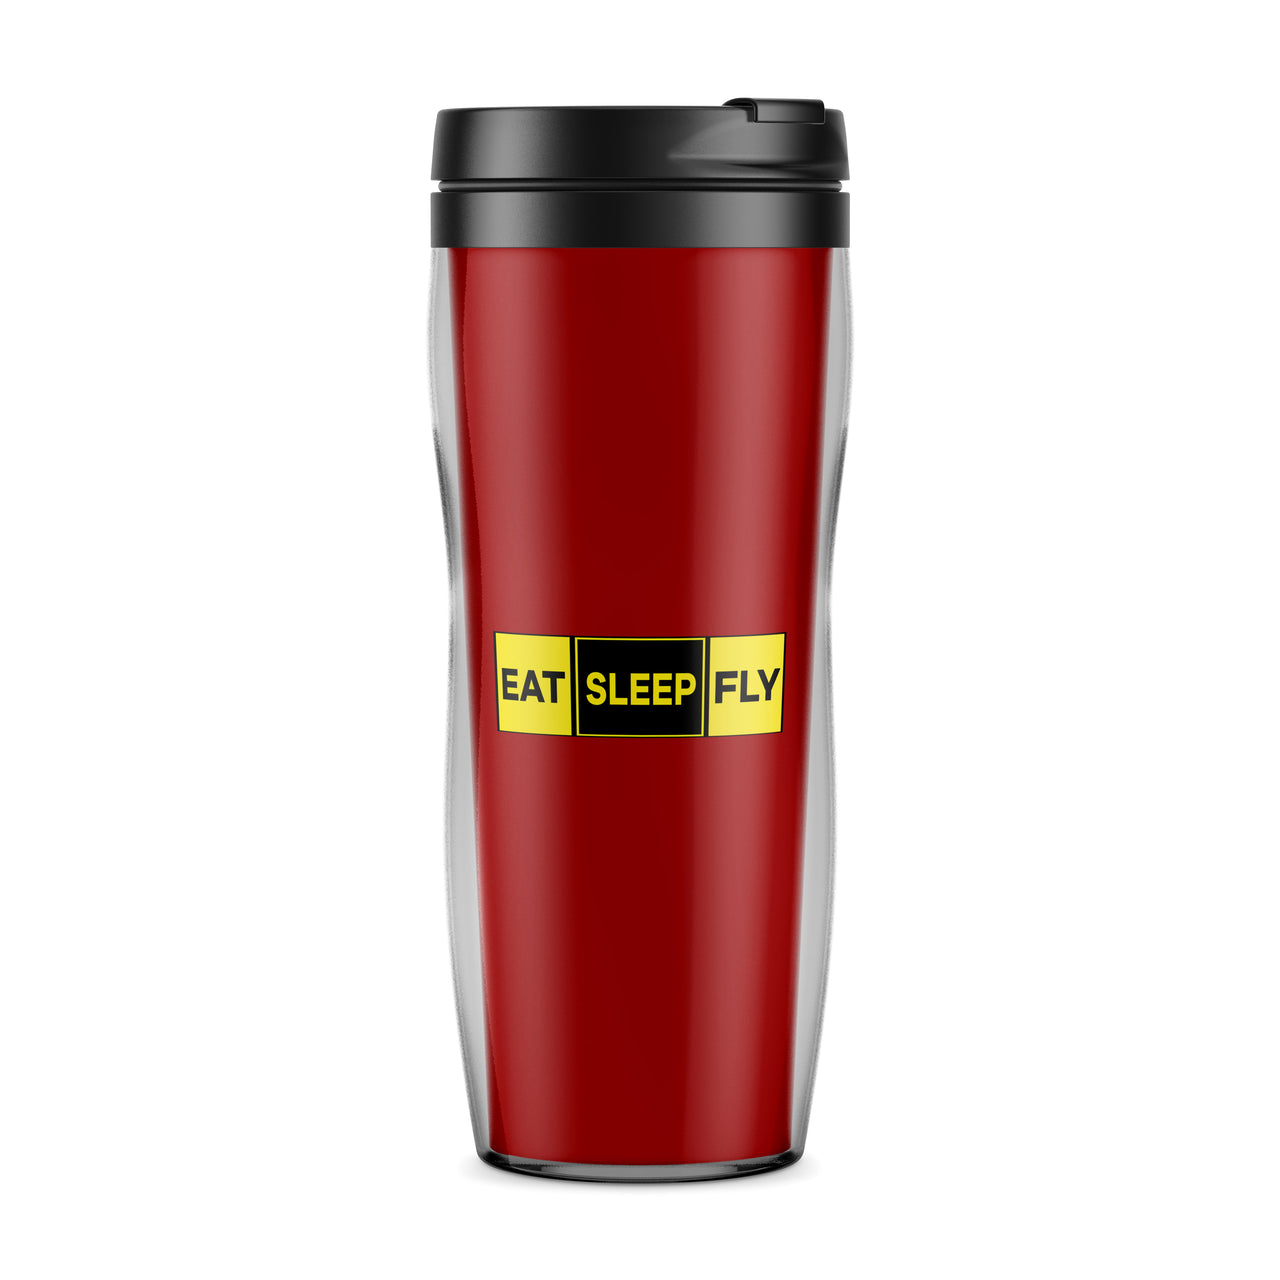 Eat Sleep Fly (Colourful) Designed Travel Mugs